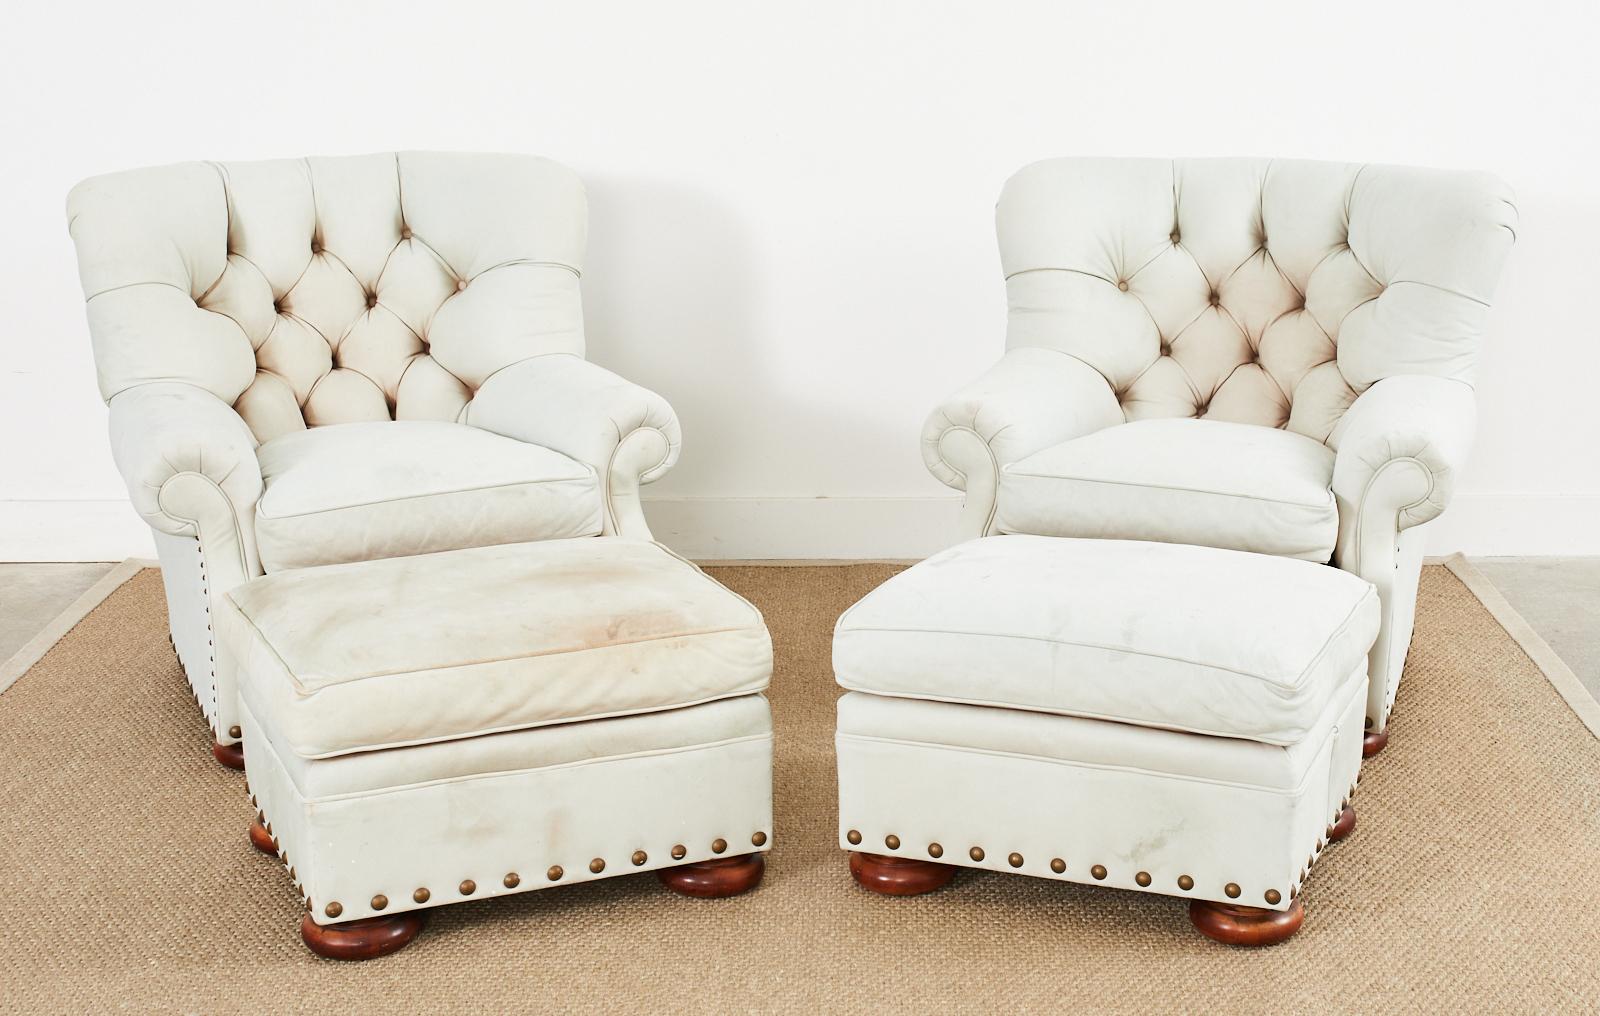 Paire de fauteuils d'écriture ou de chaises à oreilles en cuir, magnifiquement patinés, fabriqués dans le style et à la manière de Ralph Lauren. Les grands fauteuils à oreilles sont fabriqués à partir de peaux de cuir épaisses, touffues et souples